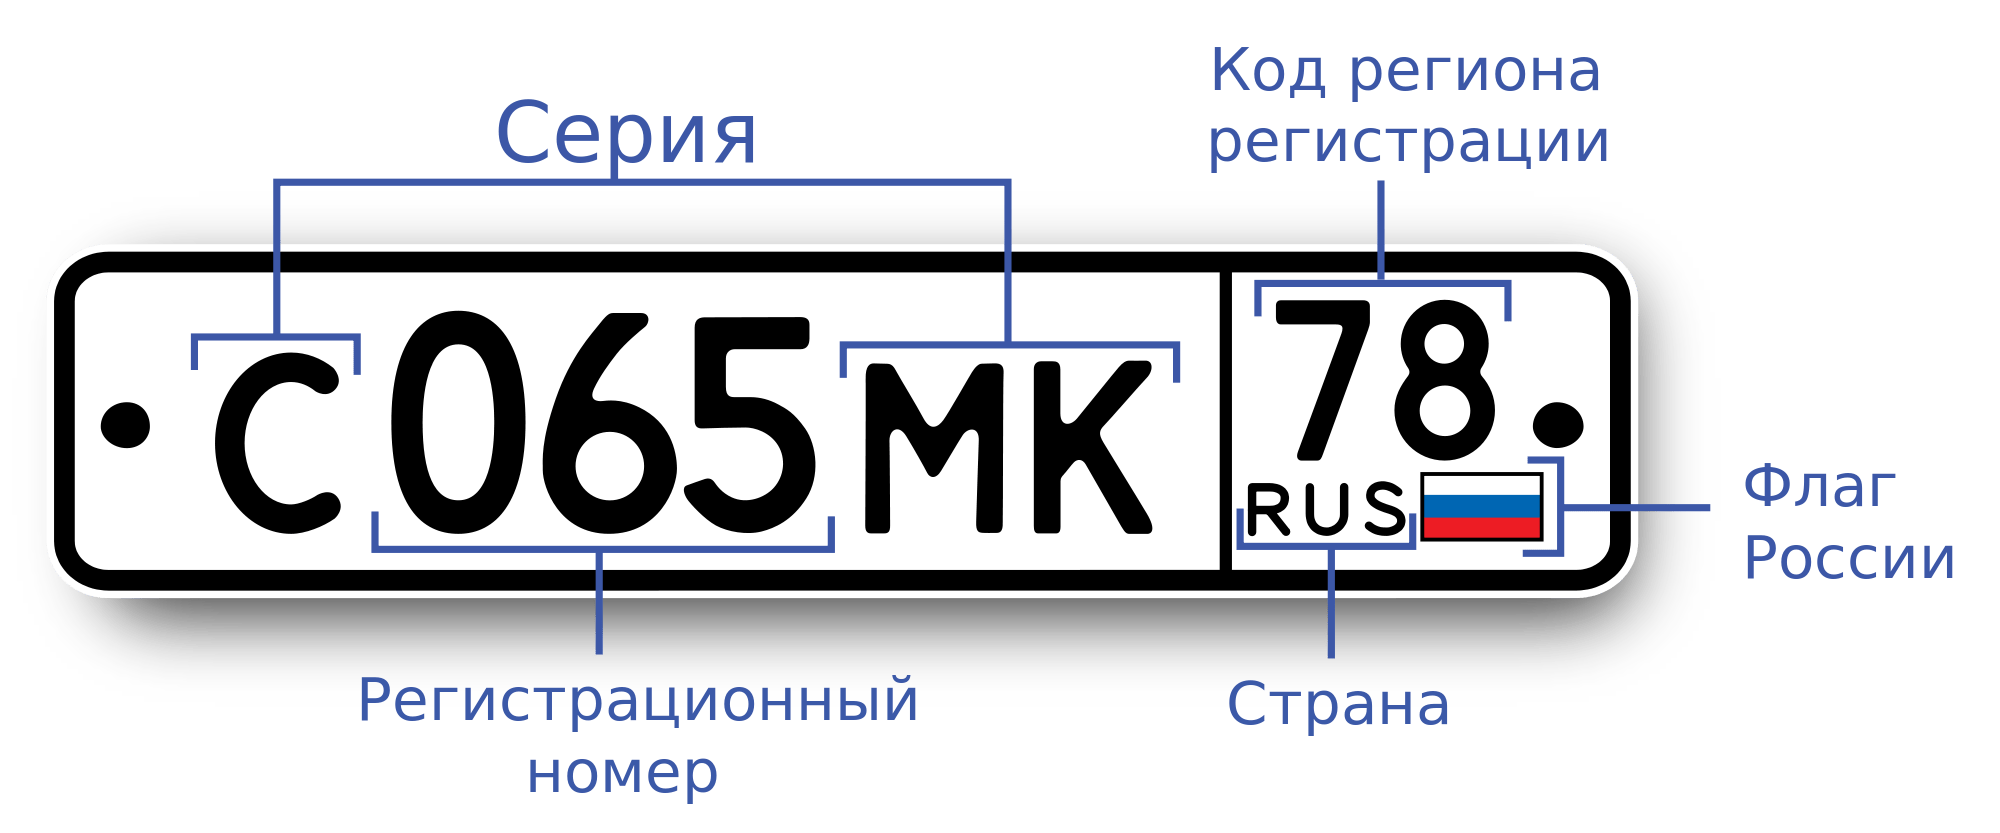 Регионы россии на номерах машин: Автомобильные коды номеров регионов России.